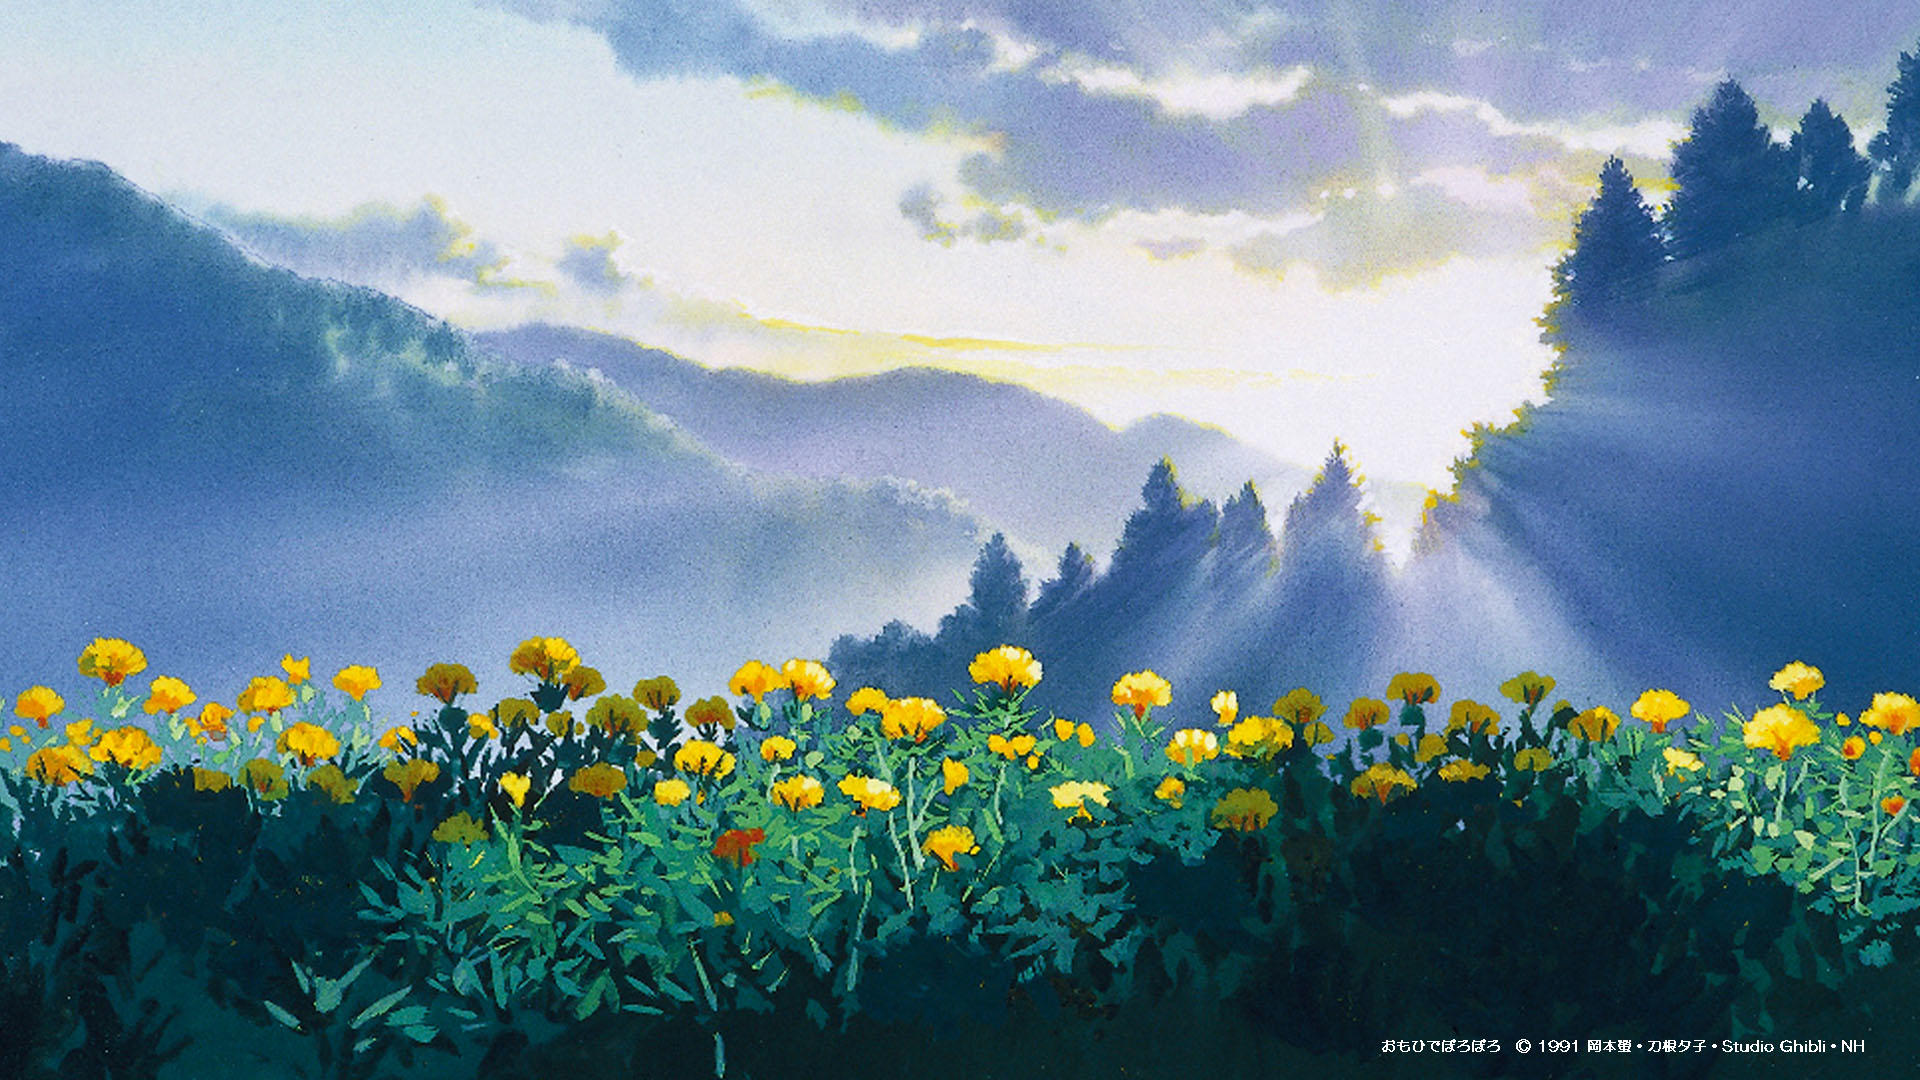 2 3 更新 Web会議などで使える スタジオジブリ壁紙 スタジオジブリ Studio Ghibli